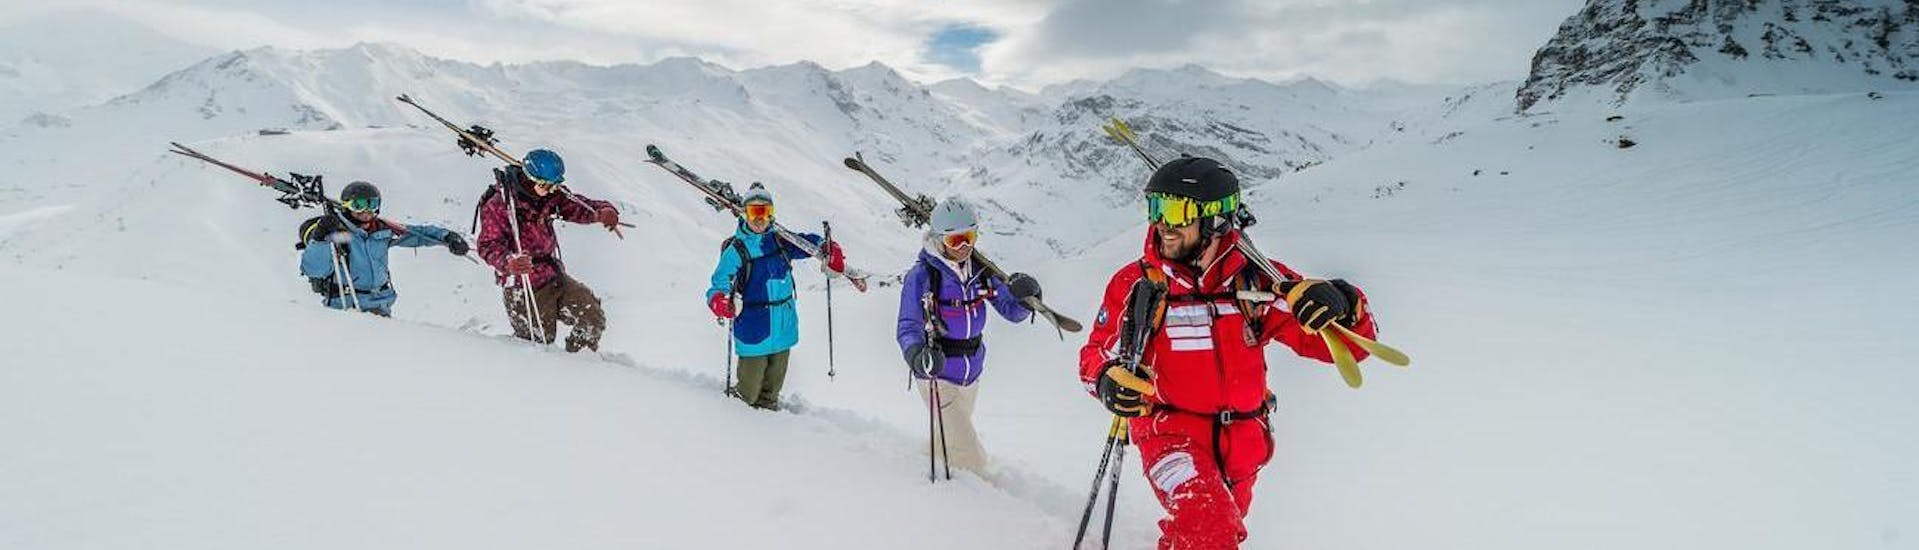 Off-Piste skilessen vanaf 16 jaar.